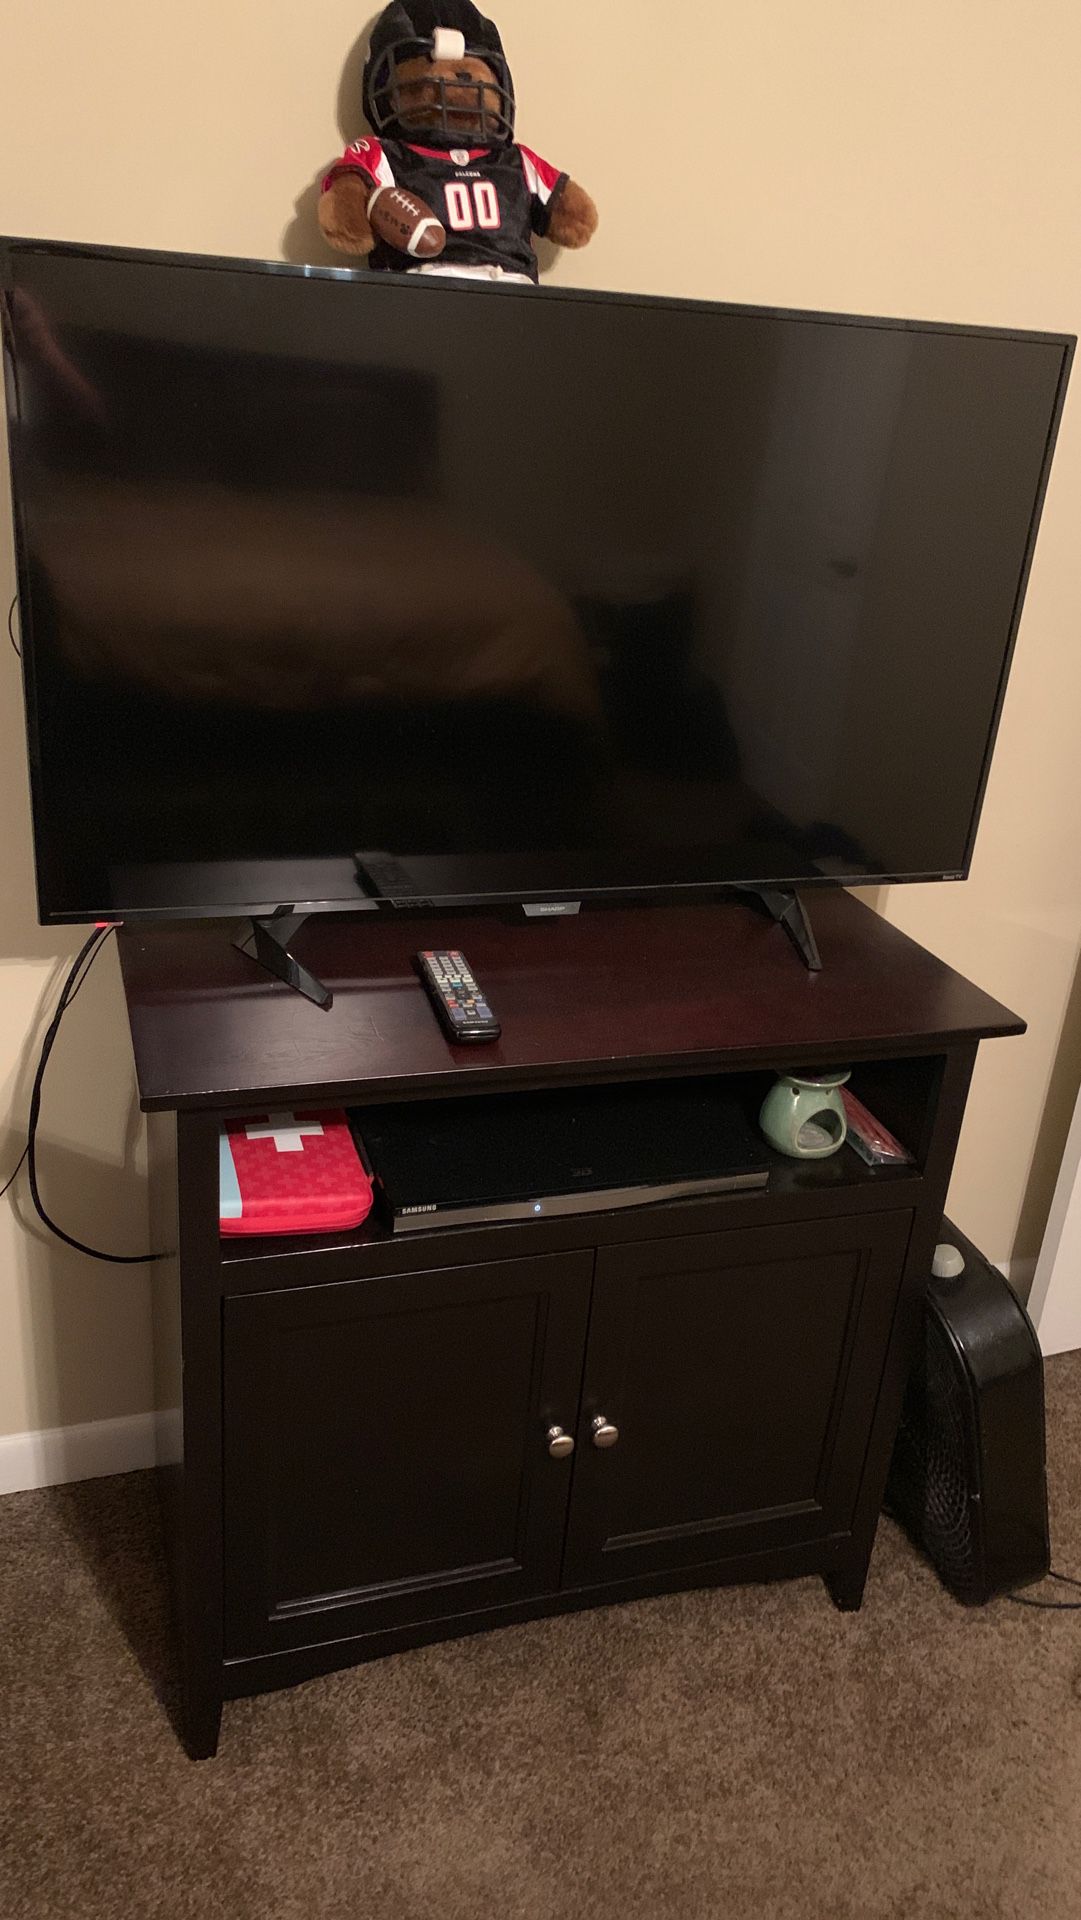 Dark wood tv stand